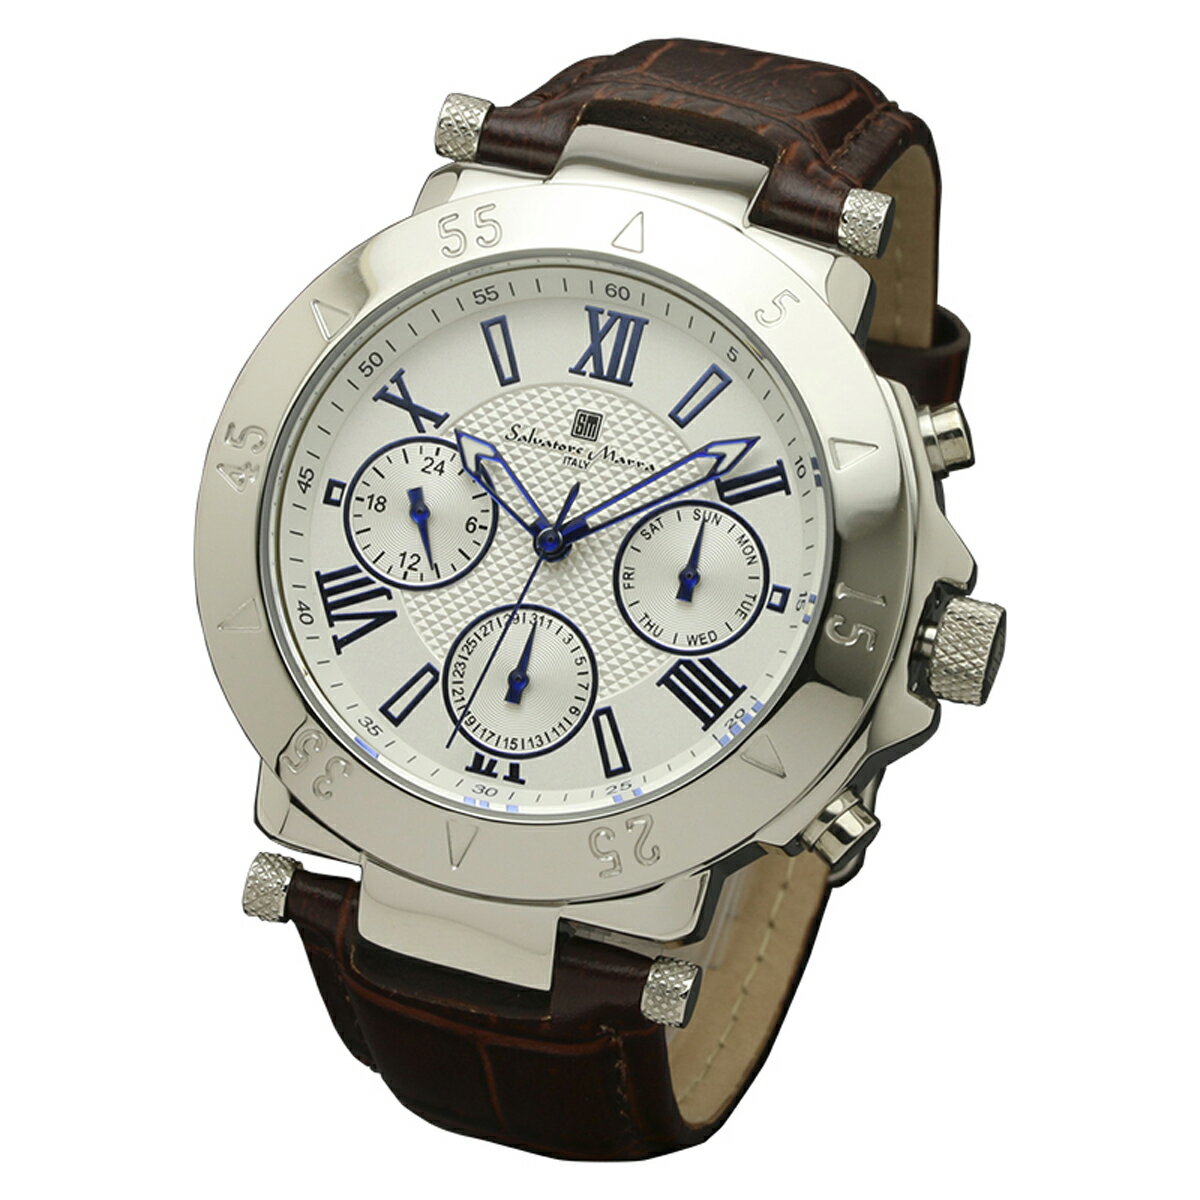 サルバトーレマーラ Salavatore Marra 腕時計 SM14118S-SSWH クオーツ メンズ腕時計 レザーベルト ローマ数字 アナログ表示 10気圧防水 紳士用 時計